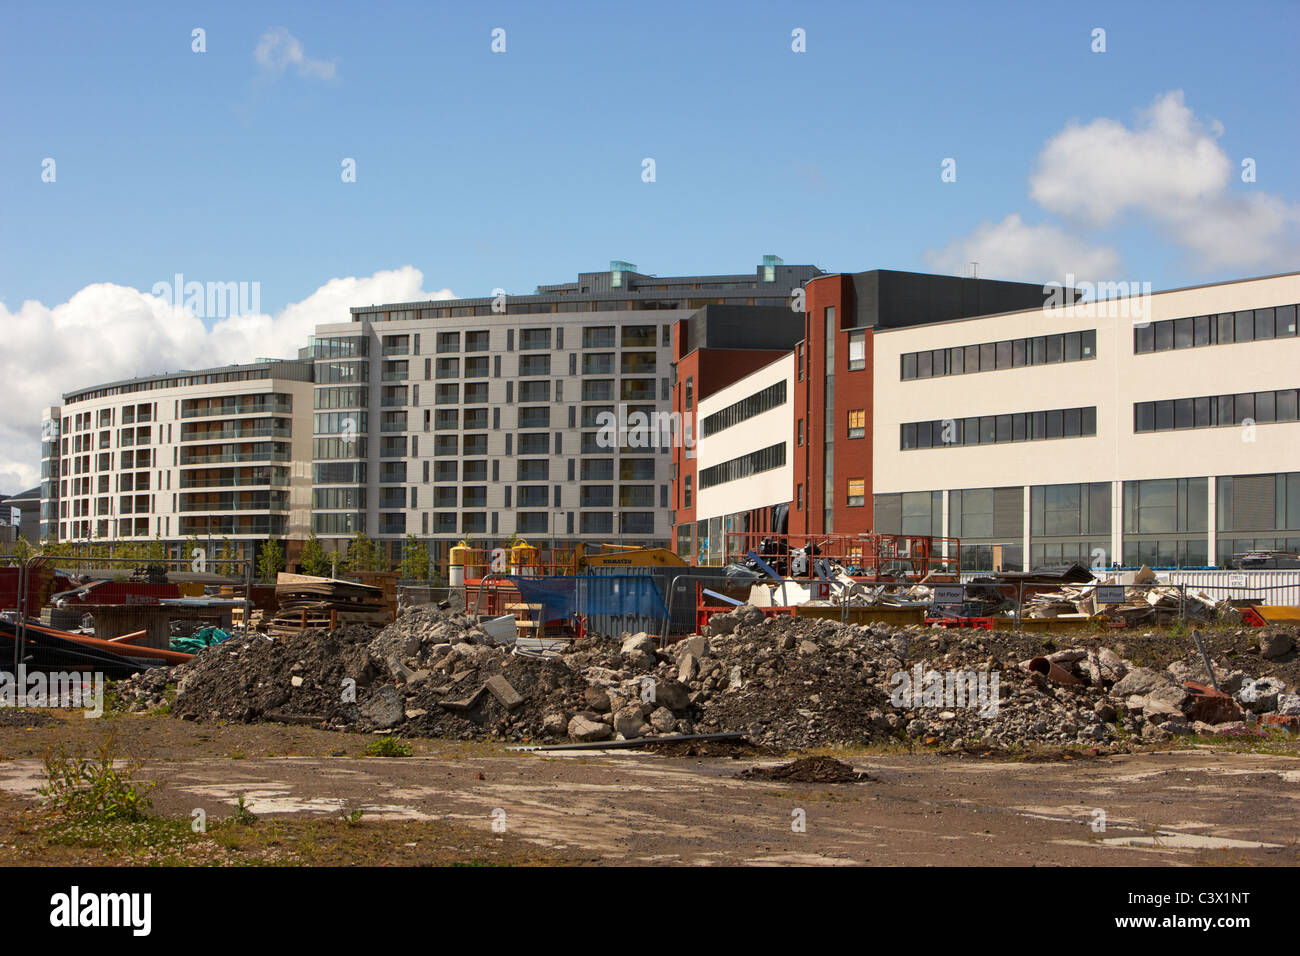 Poursuite de la construction de bureaux et appartements college de Belfast titanic quarter queens island irlande du nord uk Banque D'Images